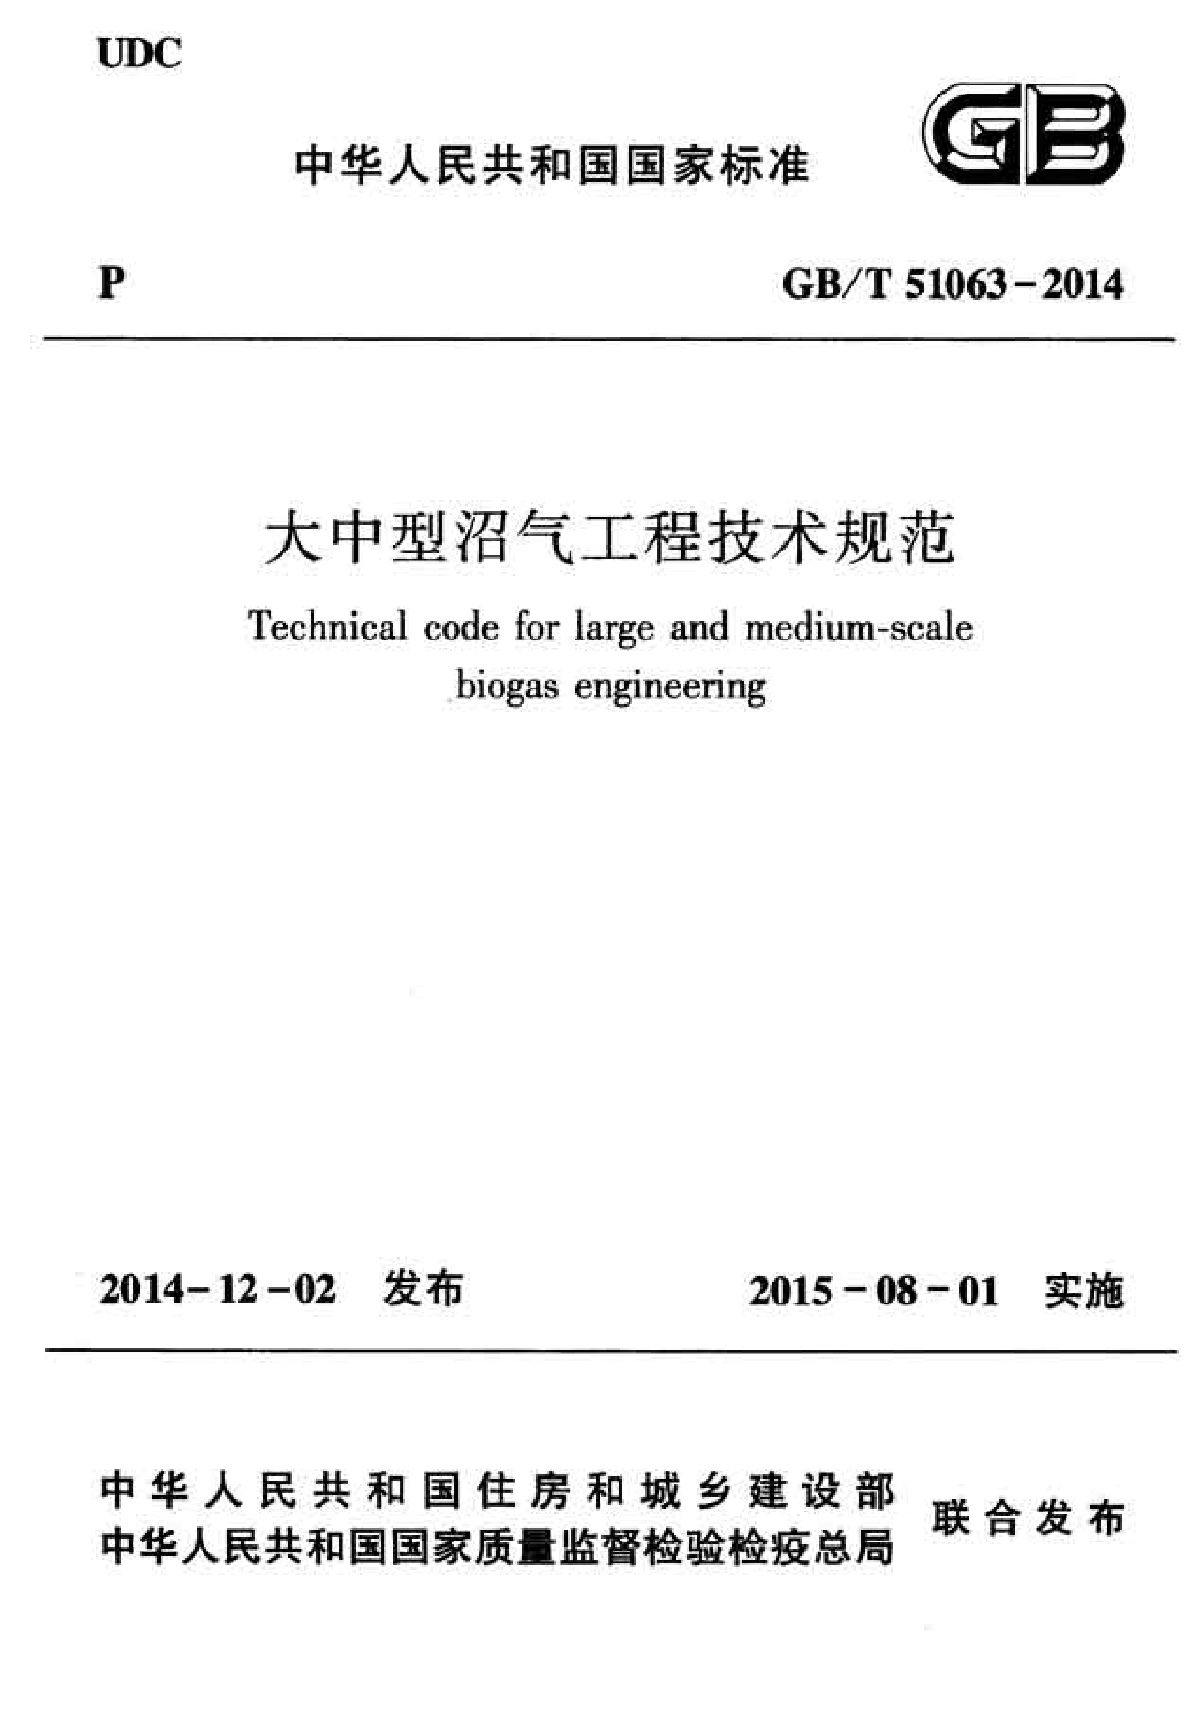 GBT51063-2014大中型沼气工程技术规范-图一